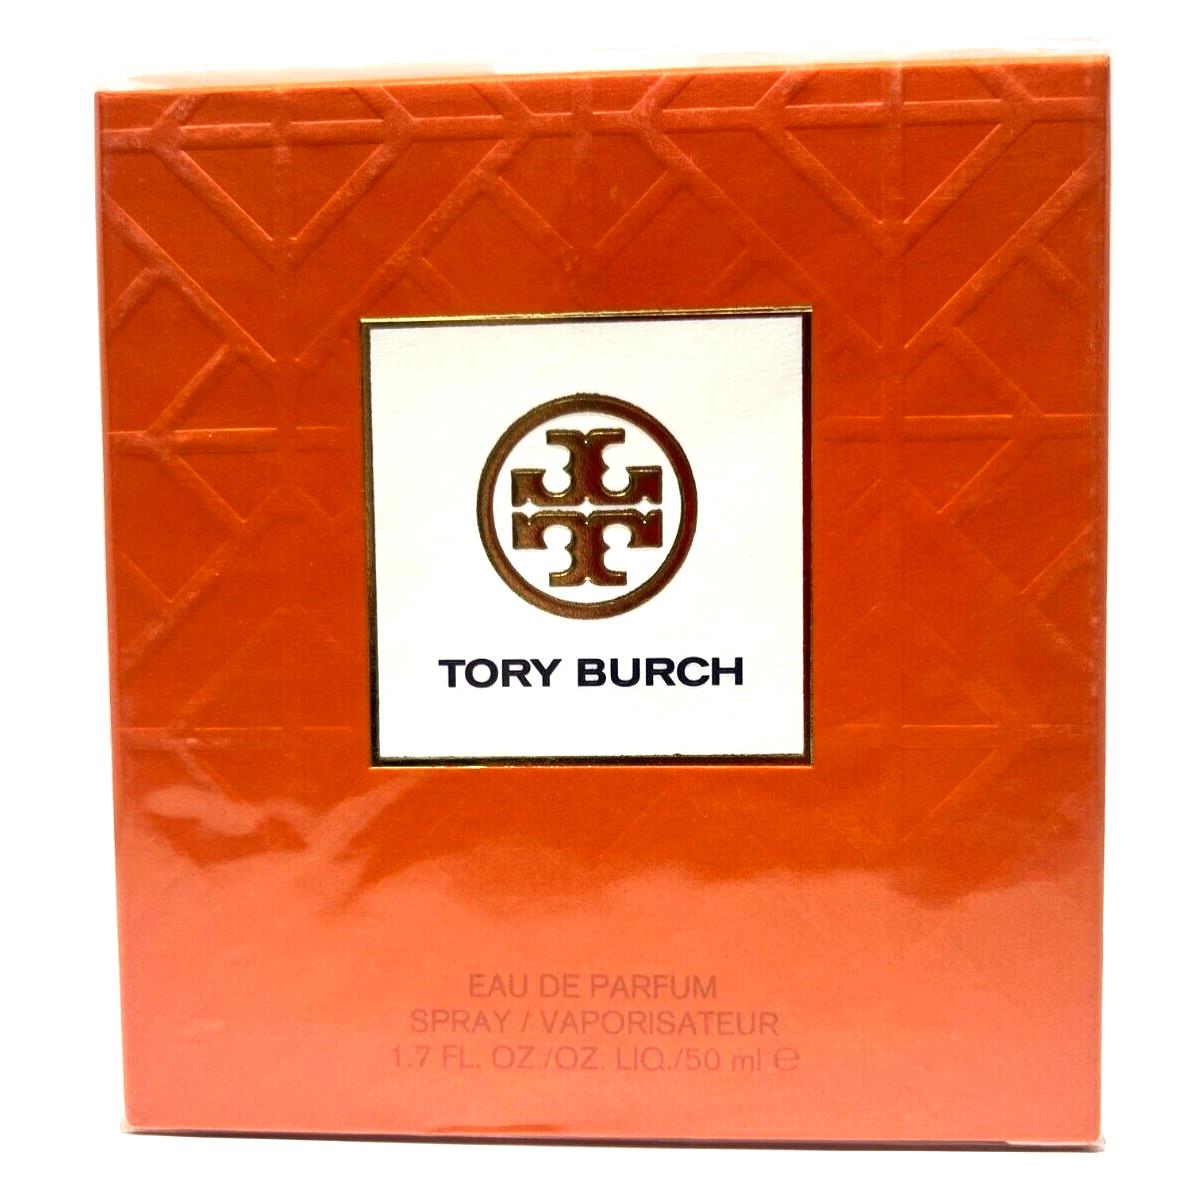 Tory Burch Signature Eau de Parfum 1.7oz / 50ml Spray